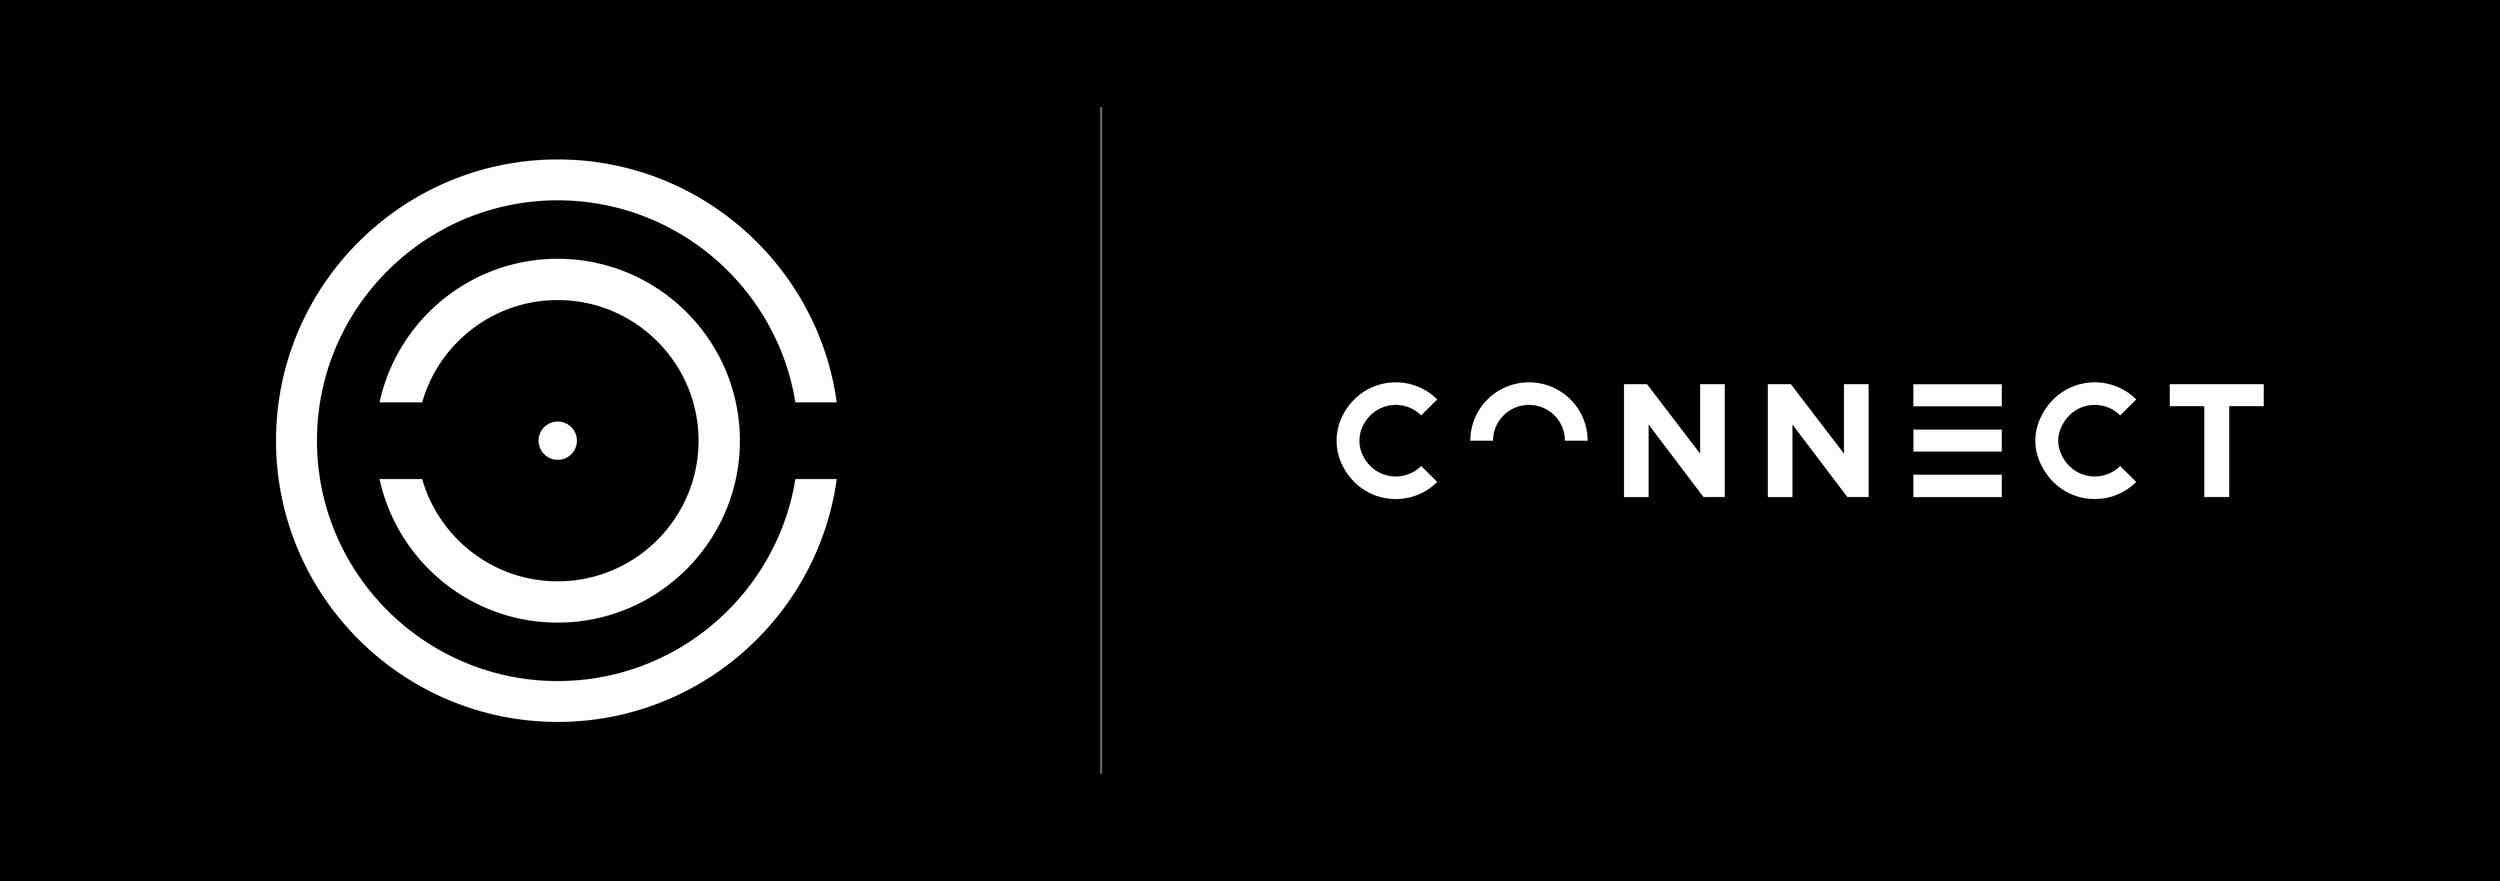 Connect-logos-1